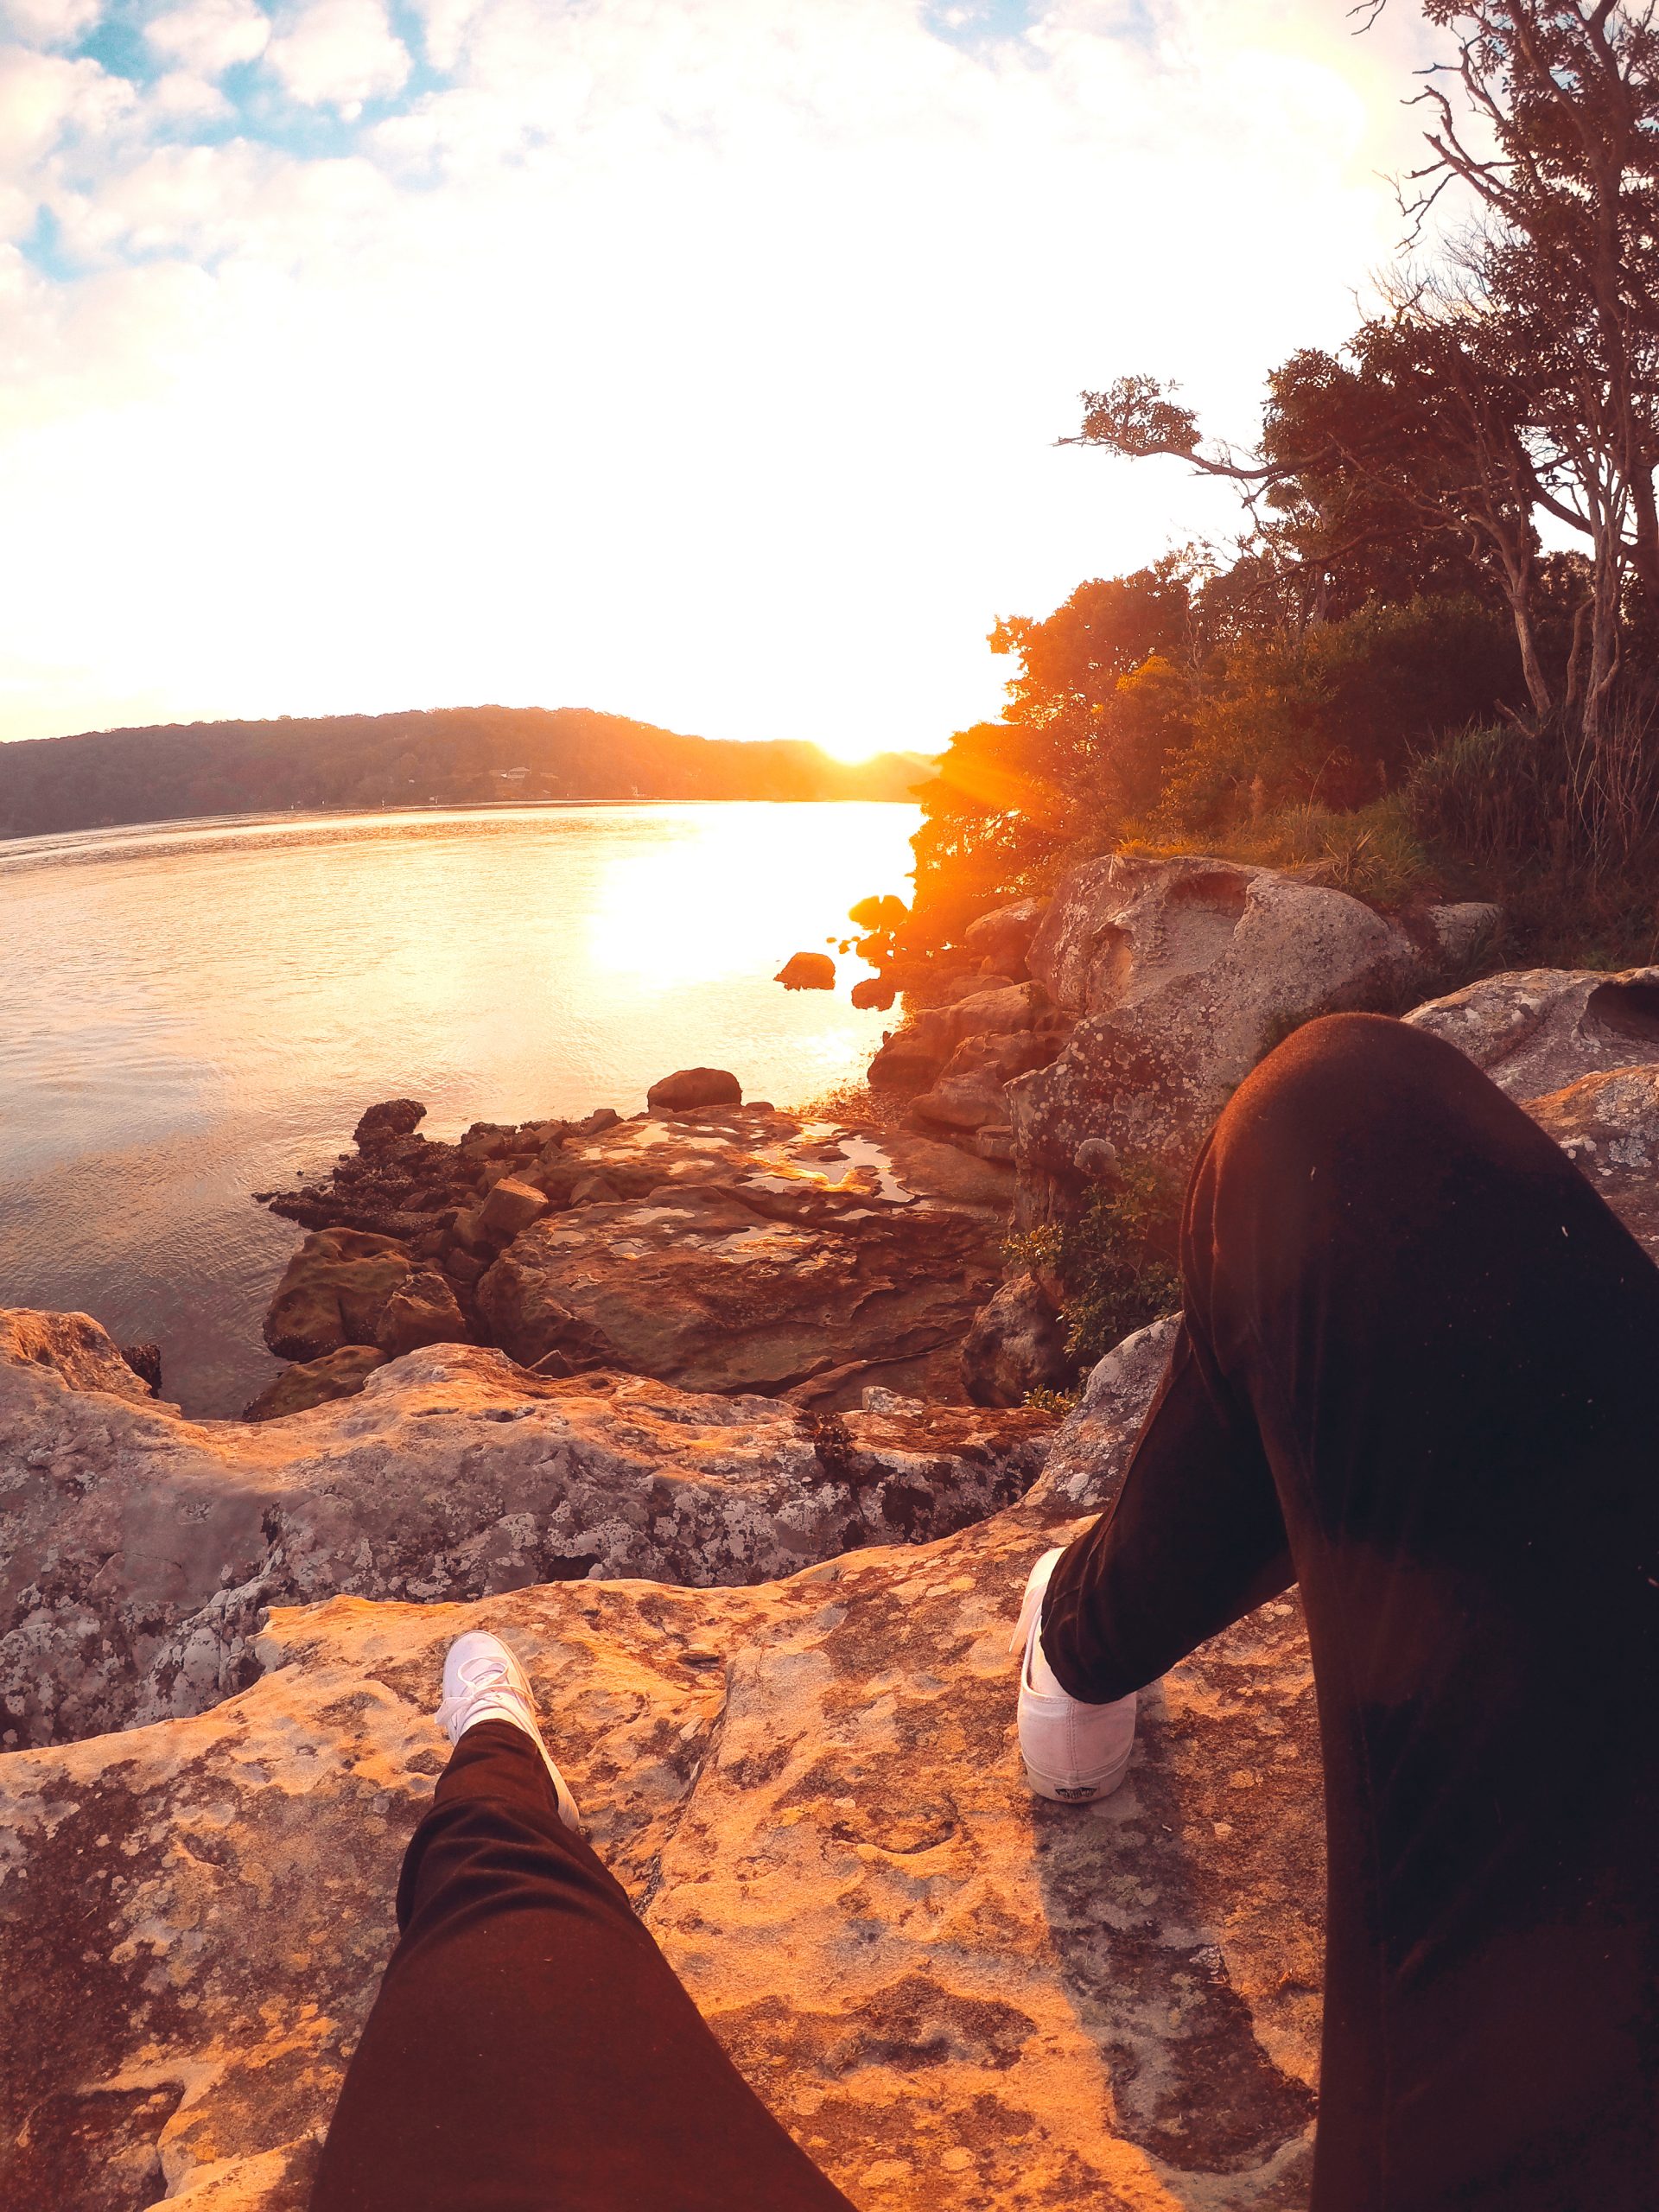 sunset at cronulla beach – gopro australia